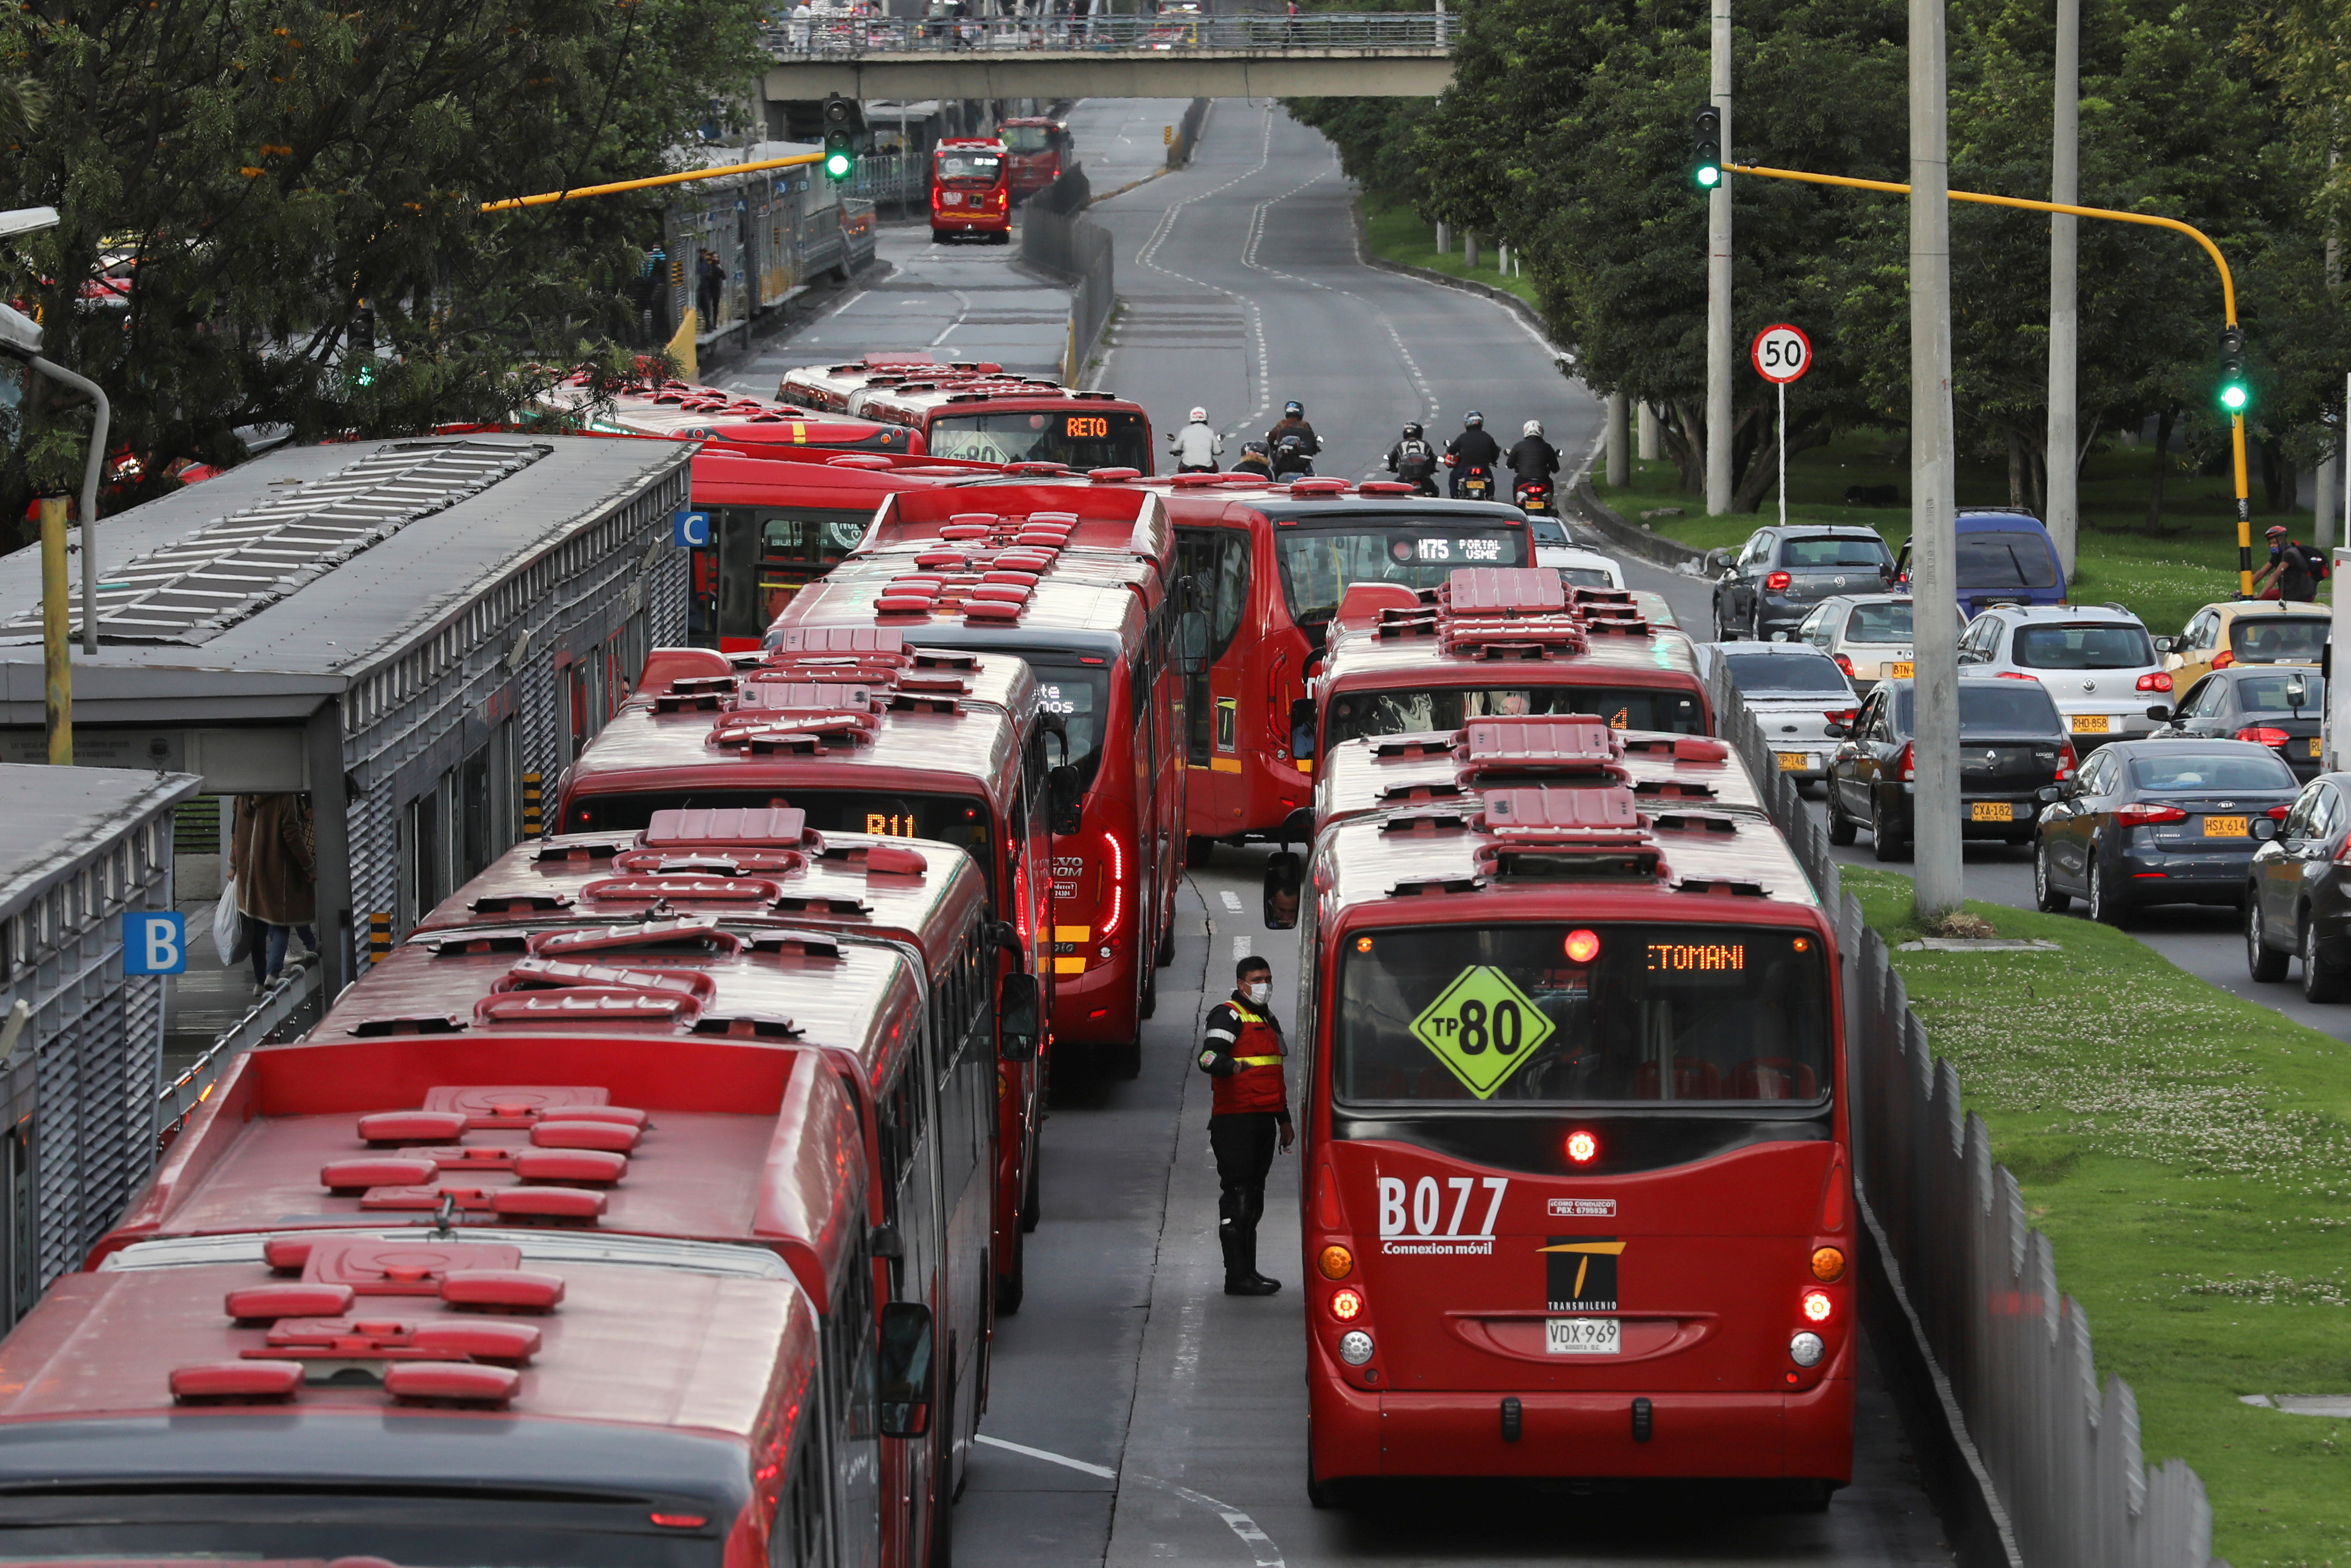 Problèmes de mobilité dans les stations TransMilenio, à Bogota, Colombie le 7 janvier 2021. REUTERS/Luisa Gonzalez